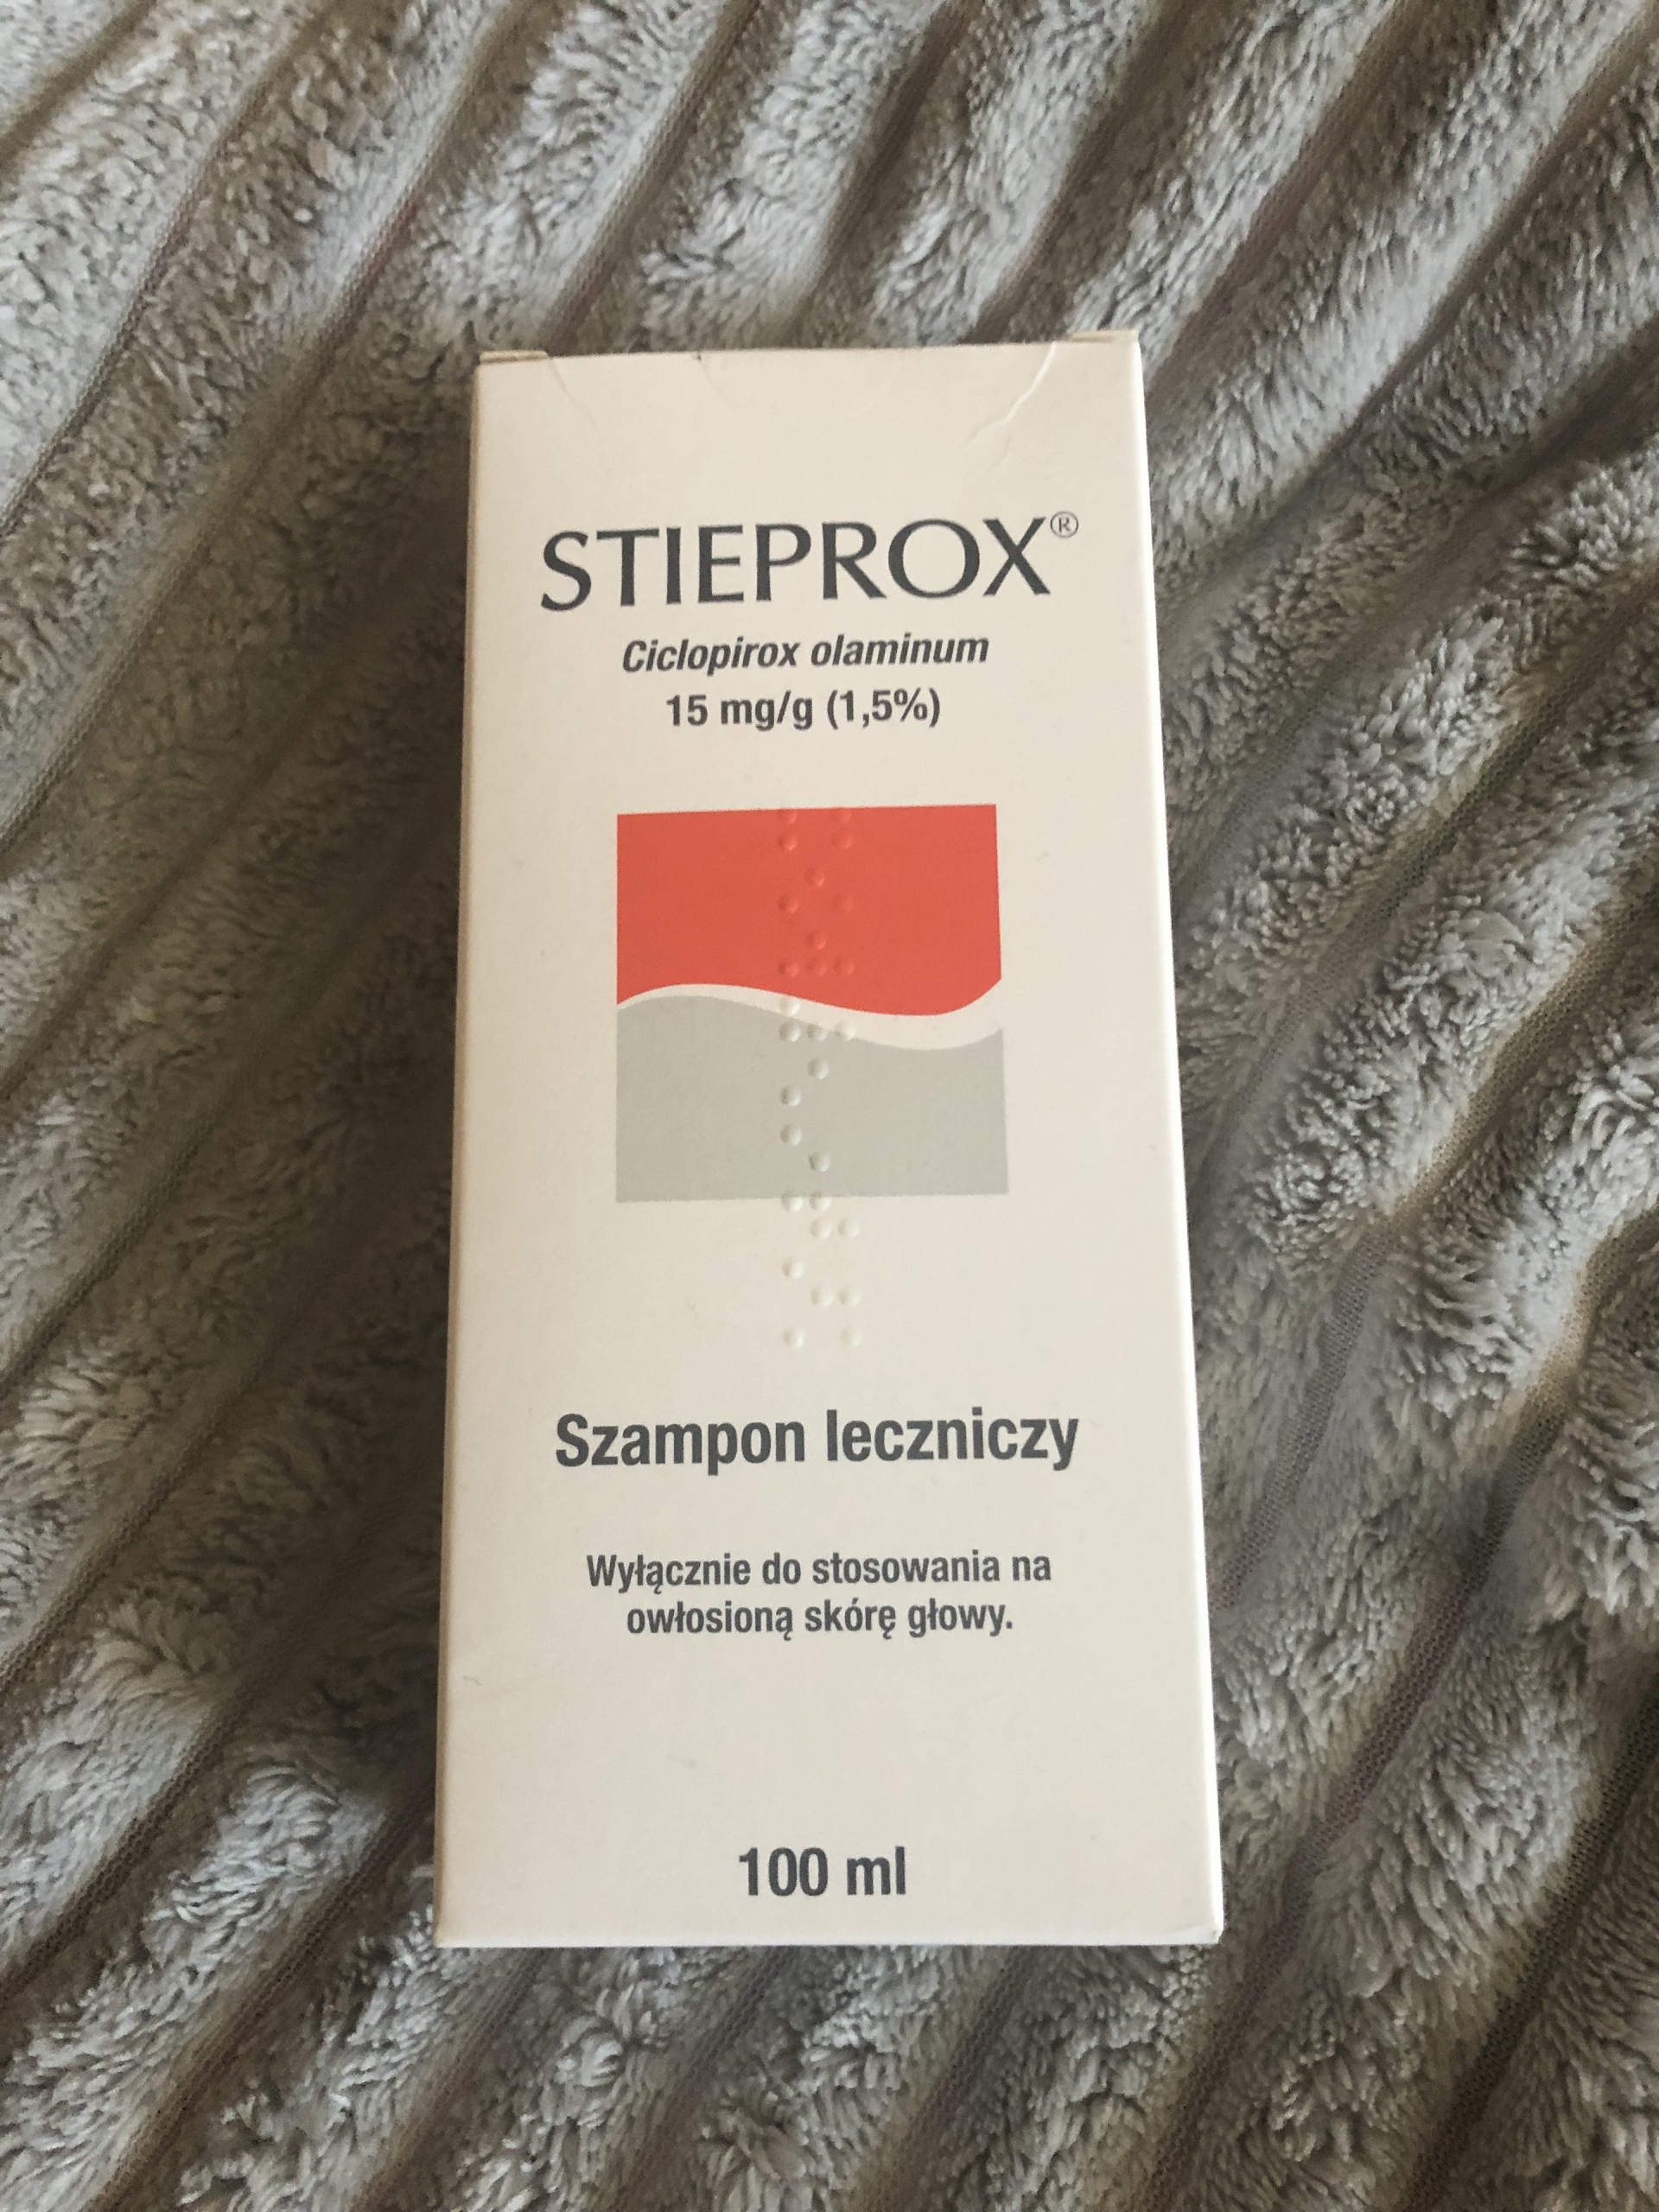 sebclair szampon leczniczy 100 ml